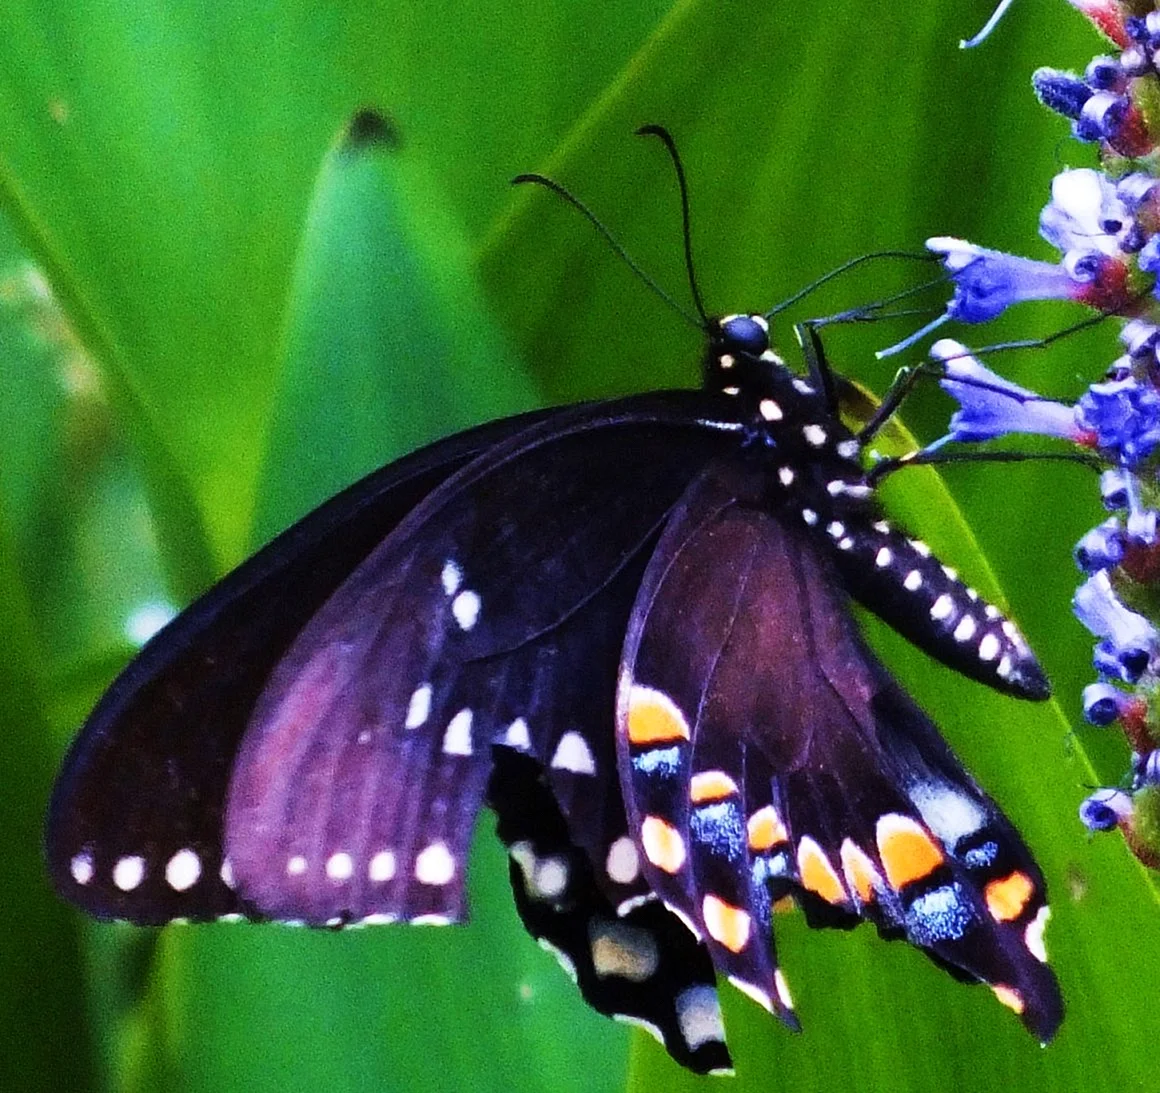 Крылья бабочки фиолетовые